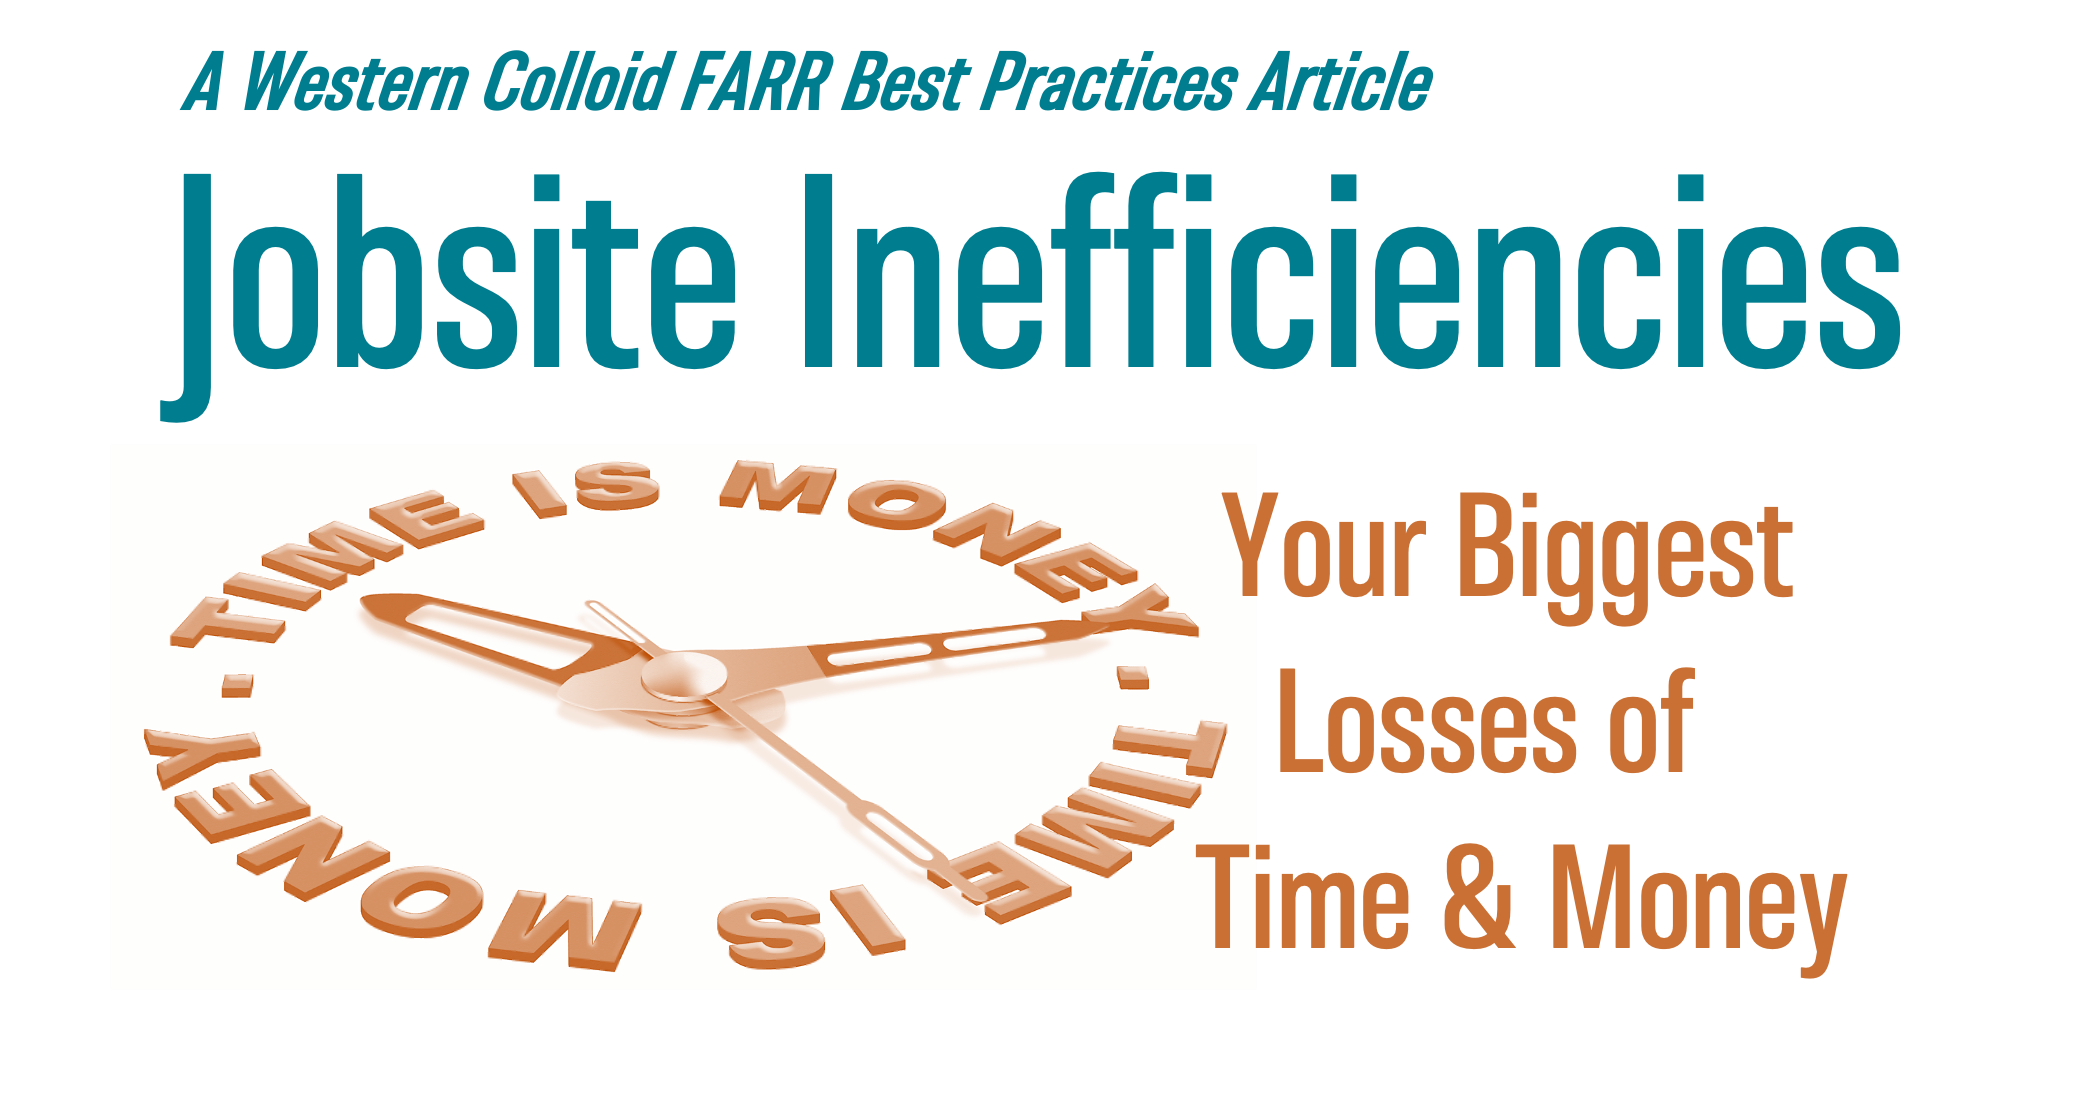 Jobsite Inefficiencies – Your Biggest Losses of Time & Money